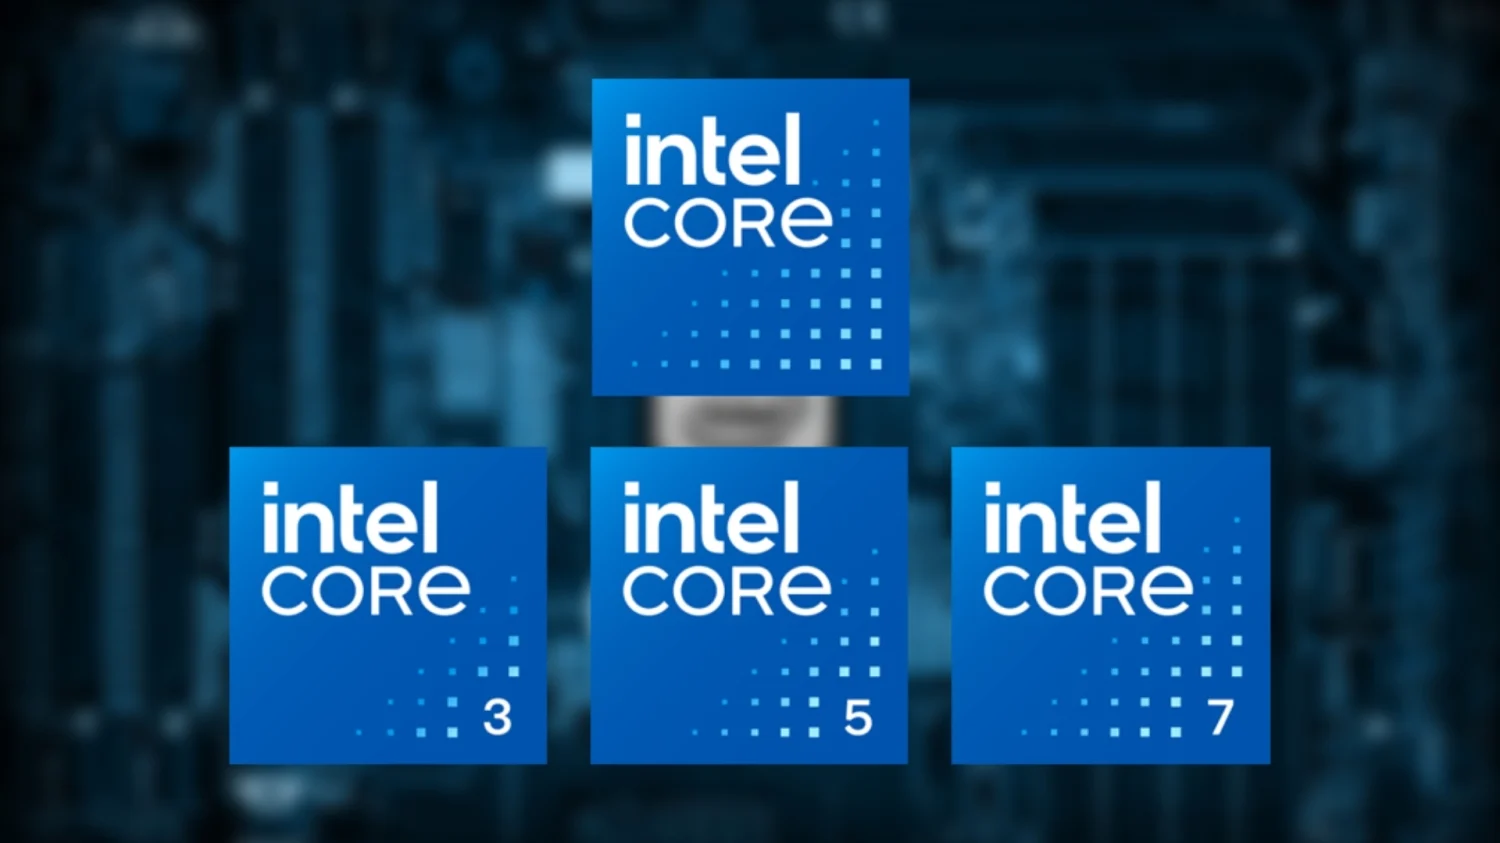 Intel's CPU Branding Gets a Major Overhaul